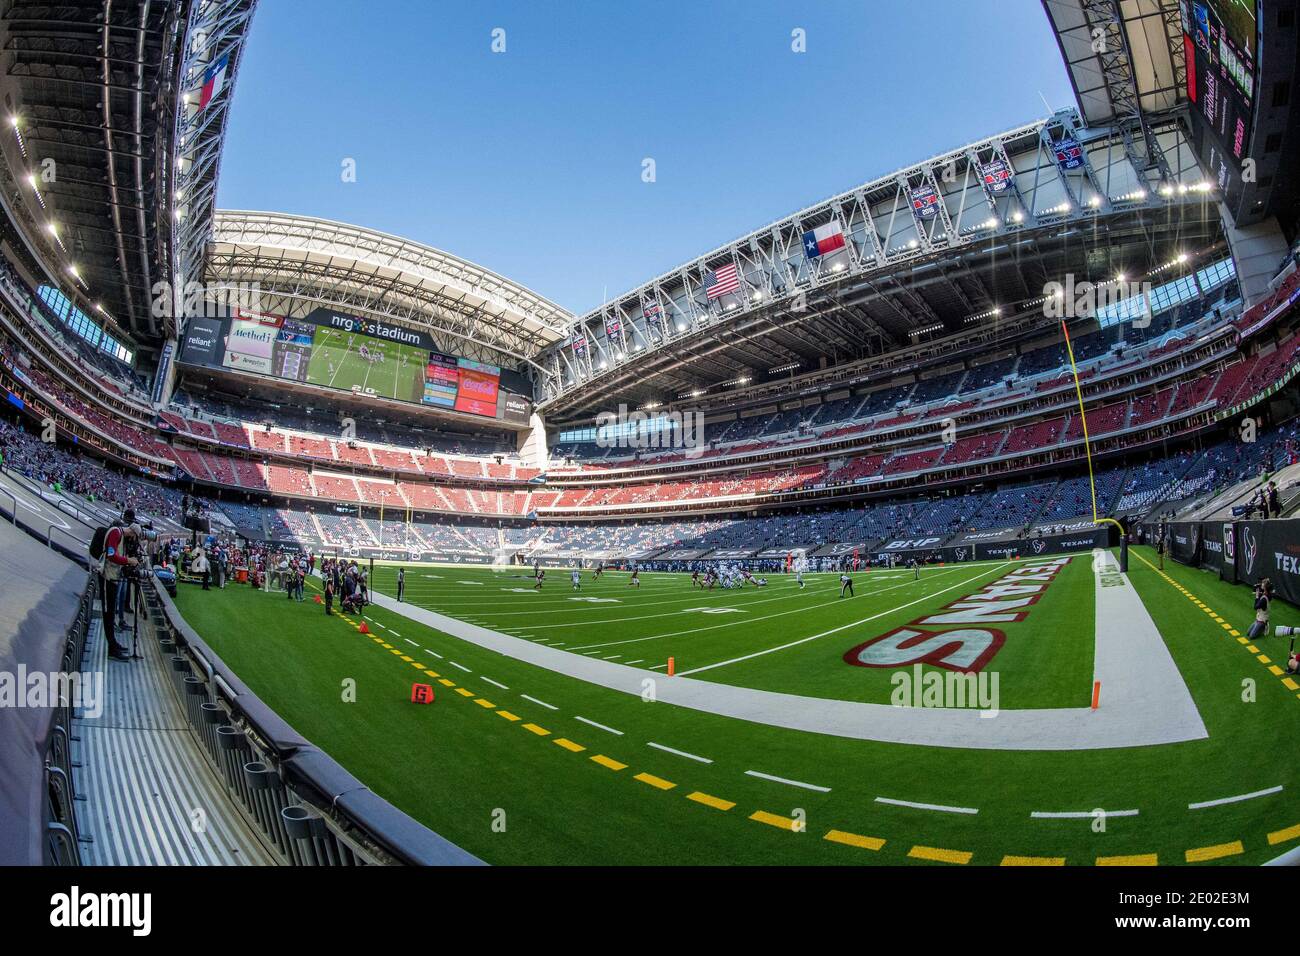 Houston, TX, USA. 6th Dec, 2020. A general view of NRG Stadium